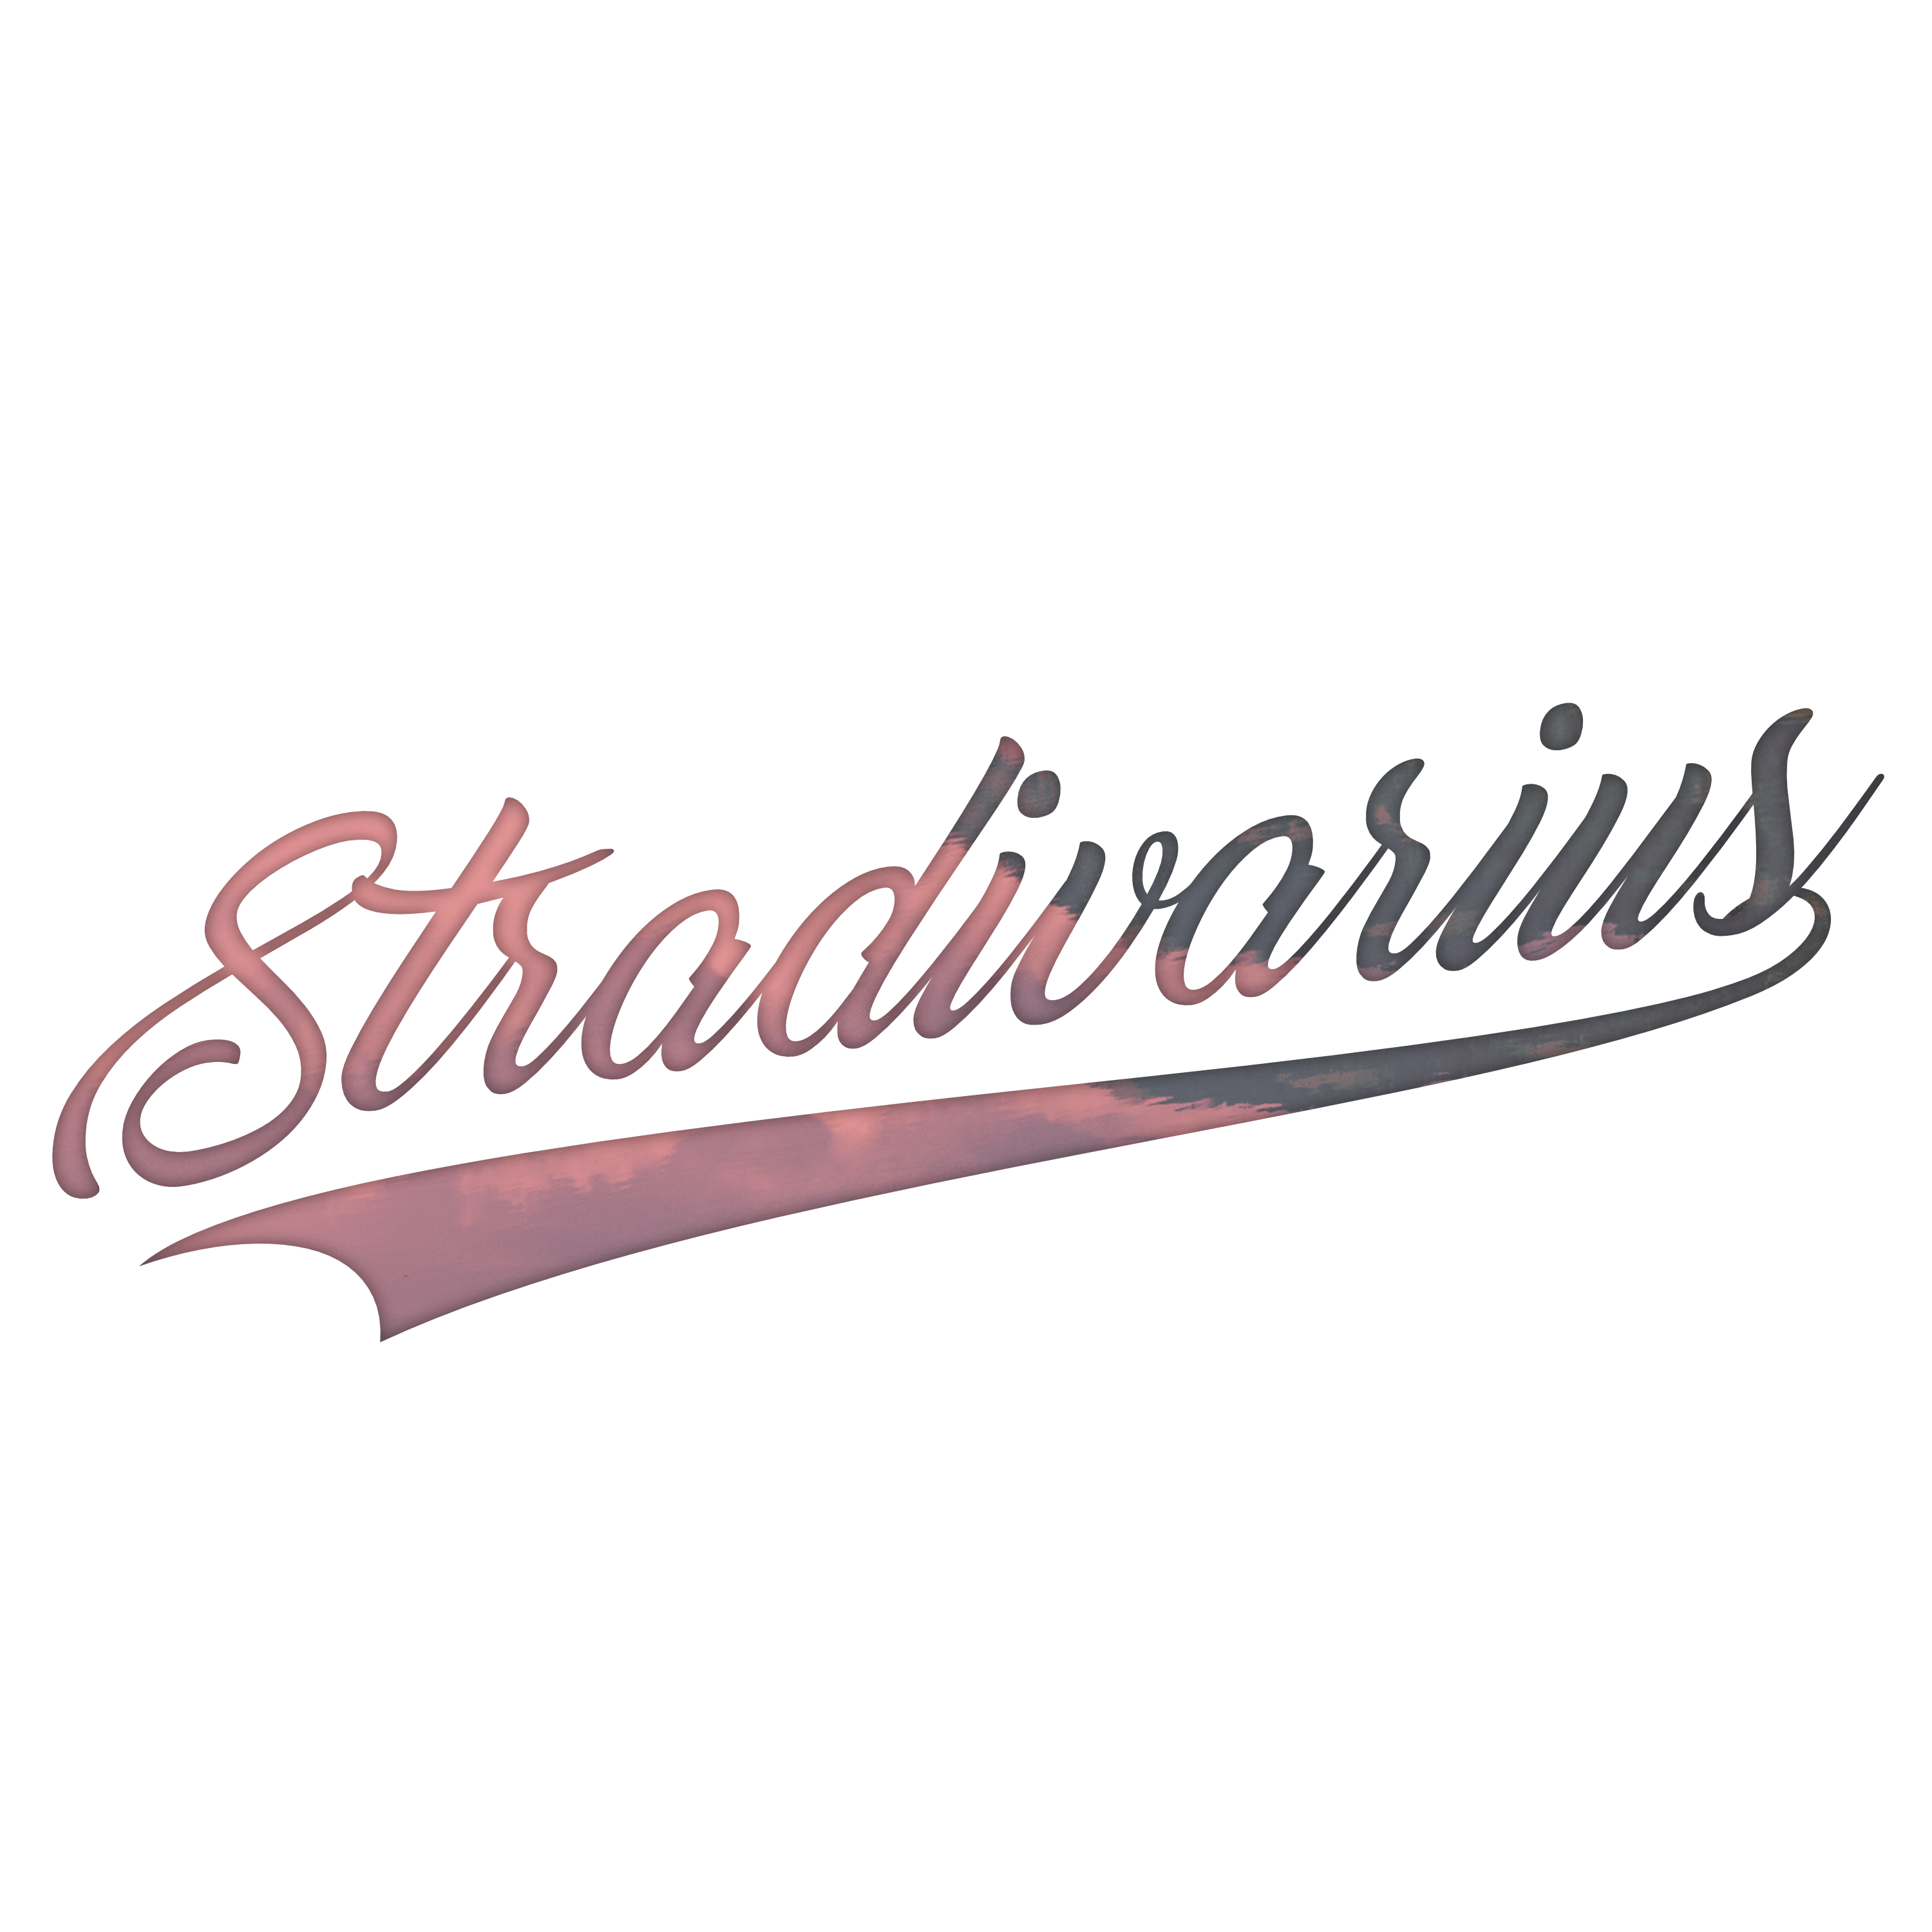 Stradivarius Logo - Logo For Stradivarius. MY WORK en 2019